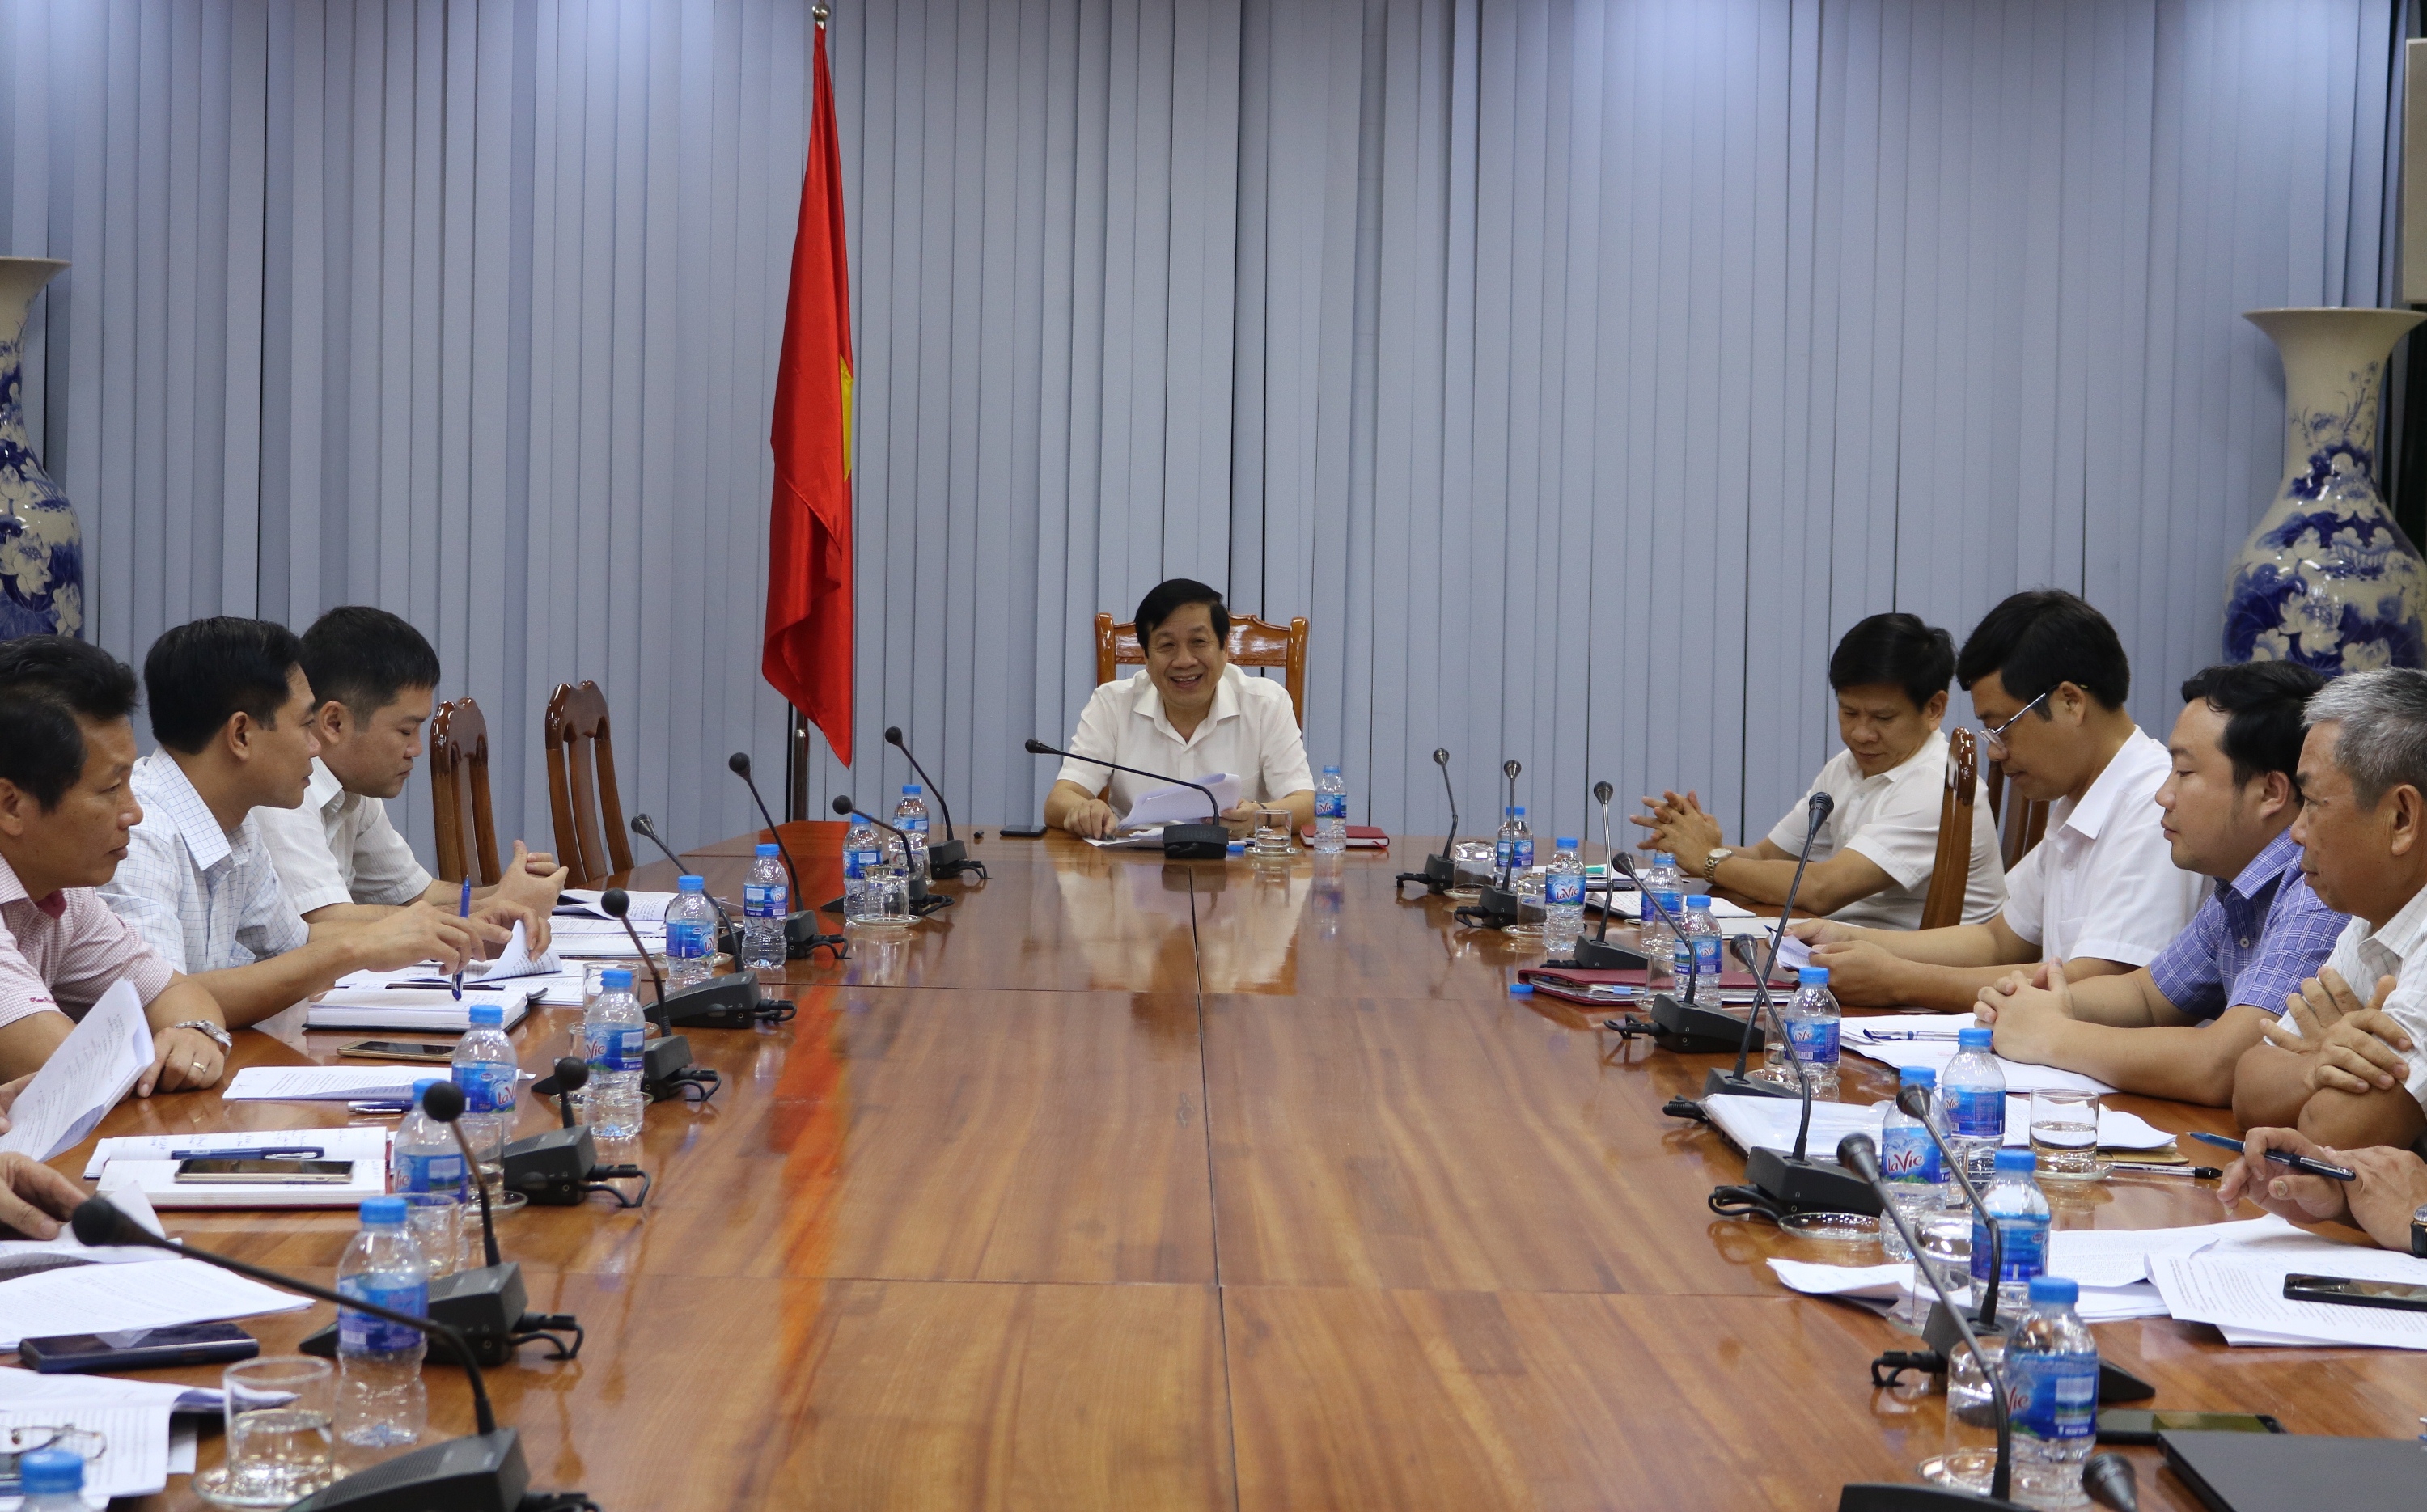 đồng chí Nguyễn Xuân Quang, Ủy viên Ban Thường vụ Tỉnh ủy, Phó Chủ tịch Thường trực UBND tỉnh  chủ trì buổi làm việc.